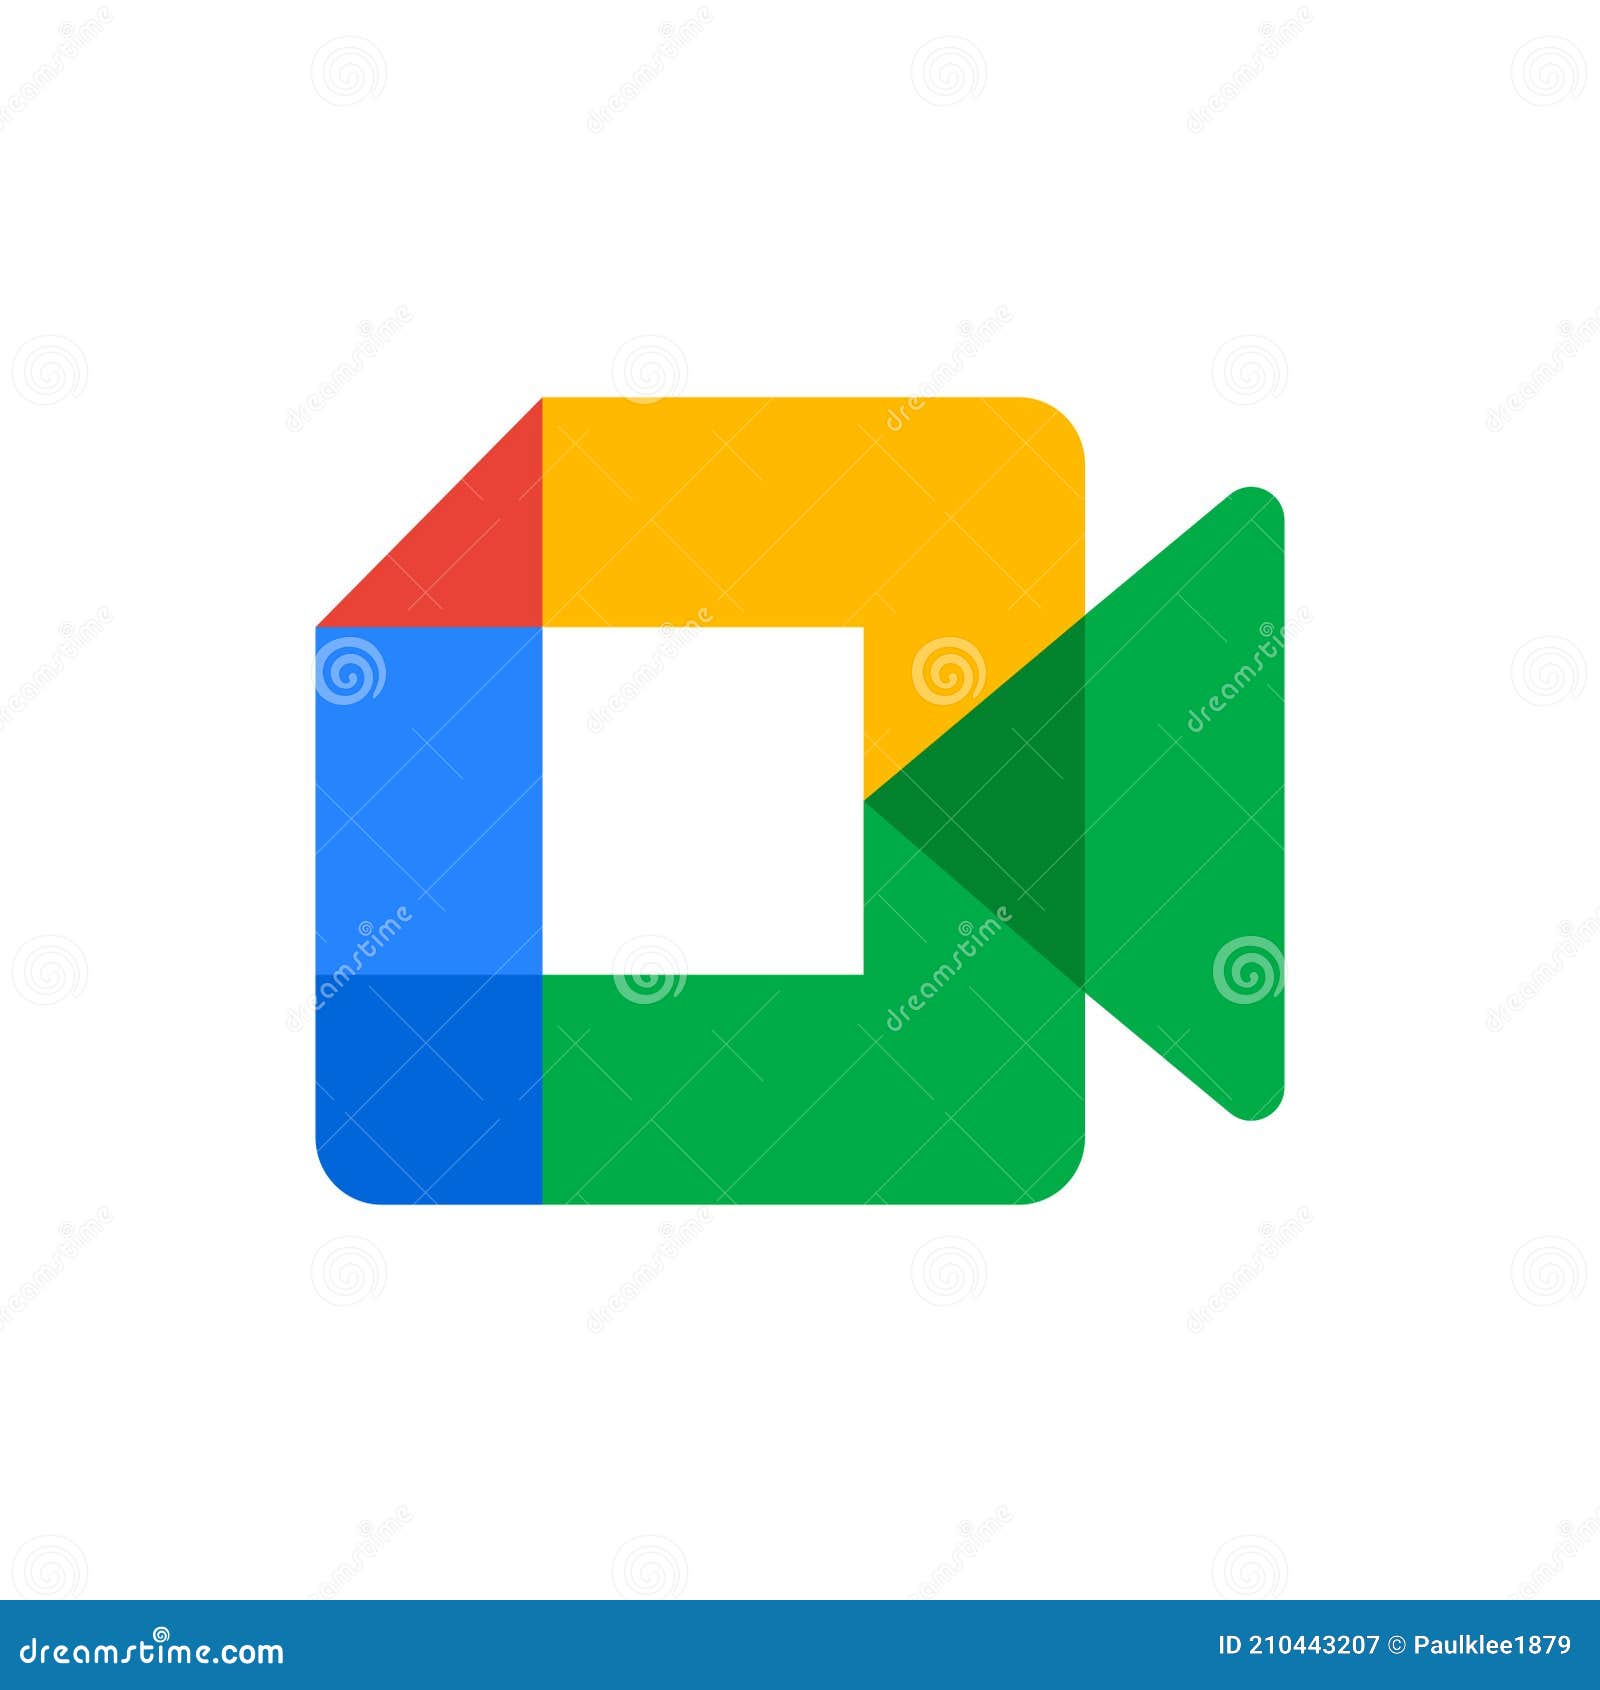 Logo Google Meet trên nền trắng giúp bạn dễ dàng nhận diện và lưu lại ấn tượng về Google Meet. Hãy xem ngay ảnh liên quan để cùng tìm hiểu thêm về nhiều tính năng hữu ích của Google Meet.